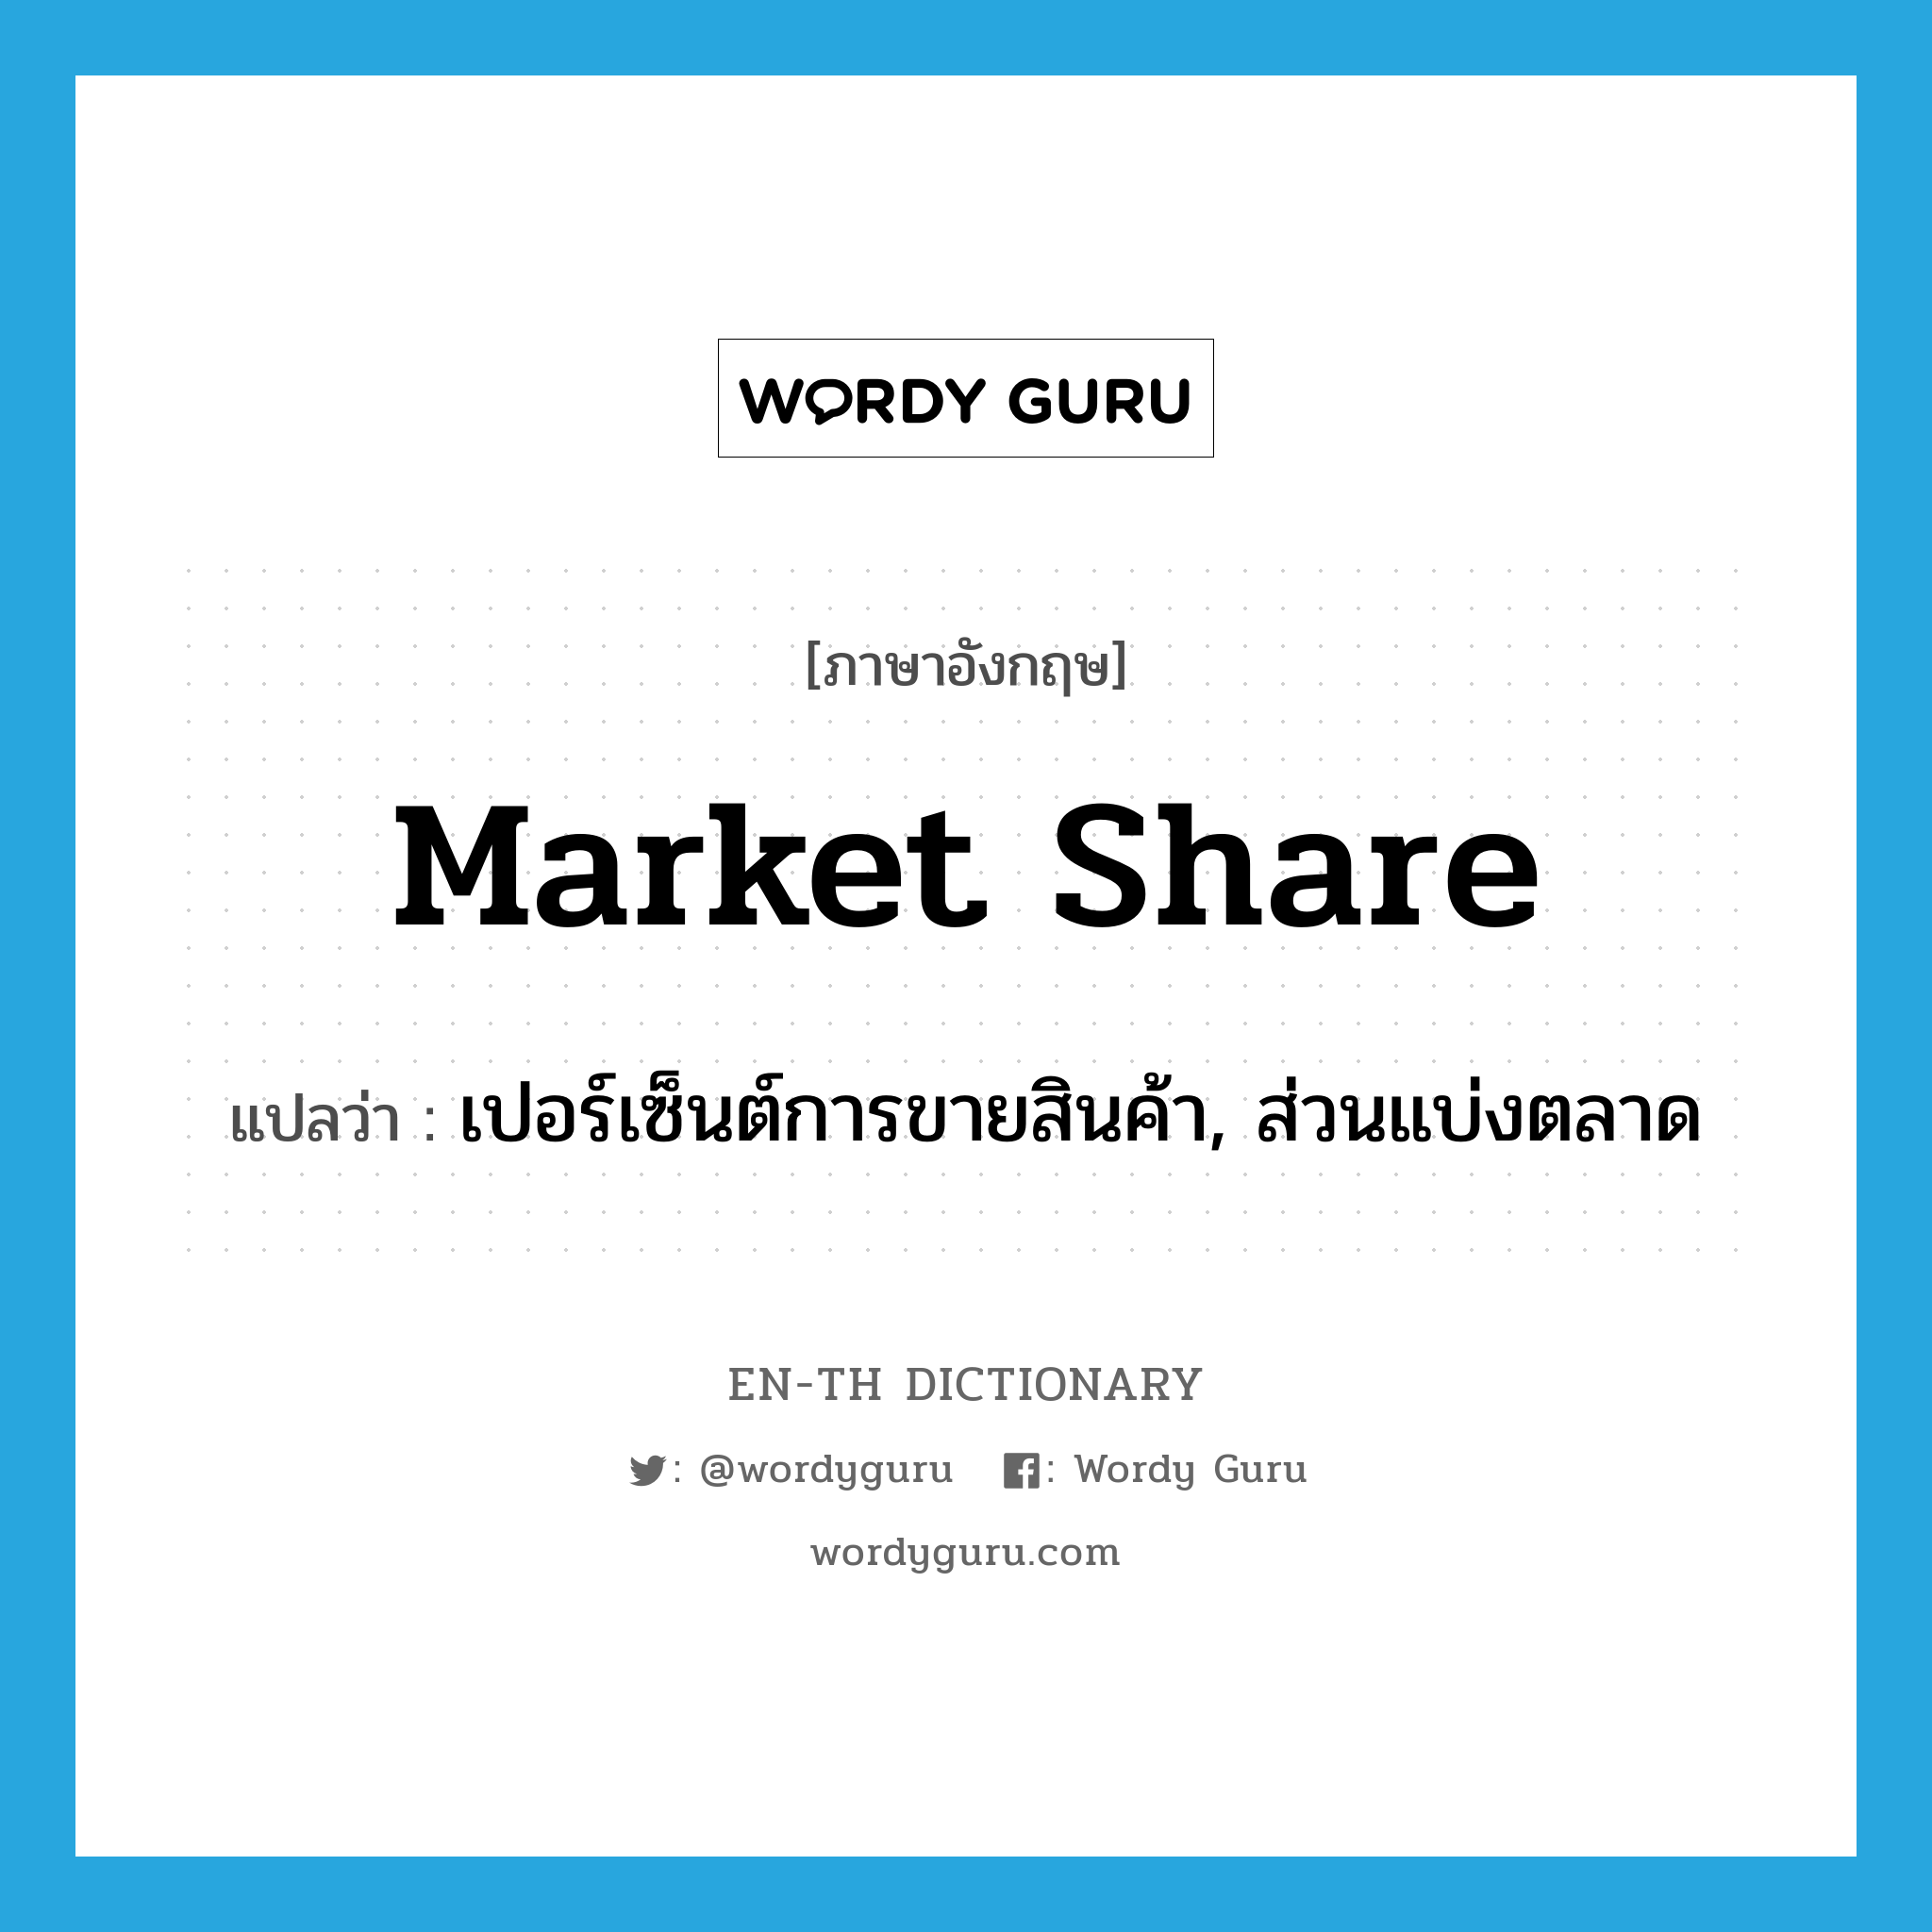 เปอร์เซ็นต์การขายสินค้า, ส่วนแบ่งตลาด ภาษาอังกฤษ?, คำศัพท์ภาษาอังกฤษ เปอร์เซ็นต์การขายสินค้า, ส่วนแบ่งตลาด แปลว่า market share ประเภท N หมวด N